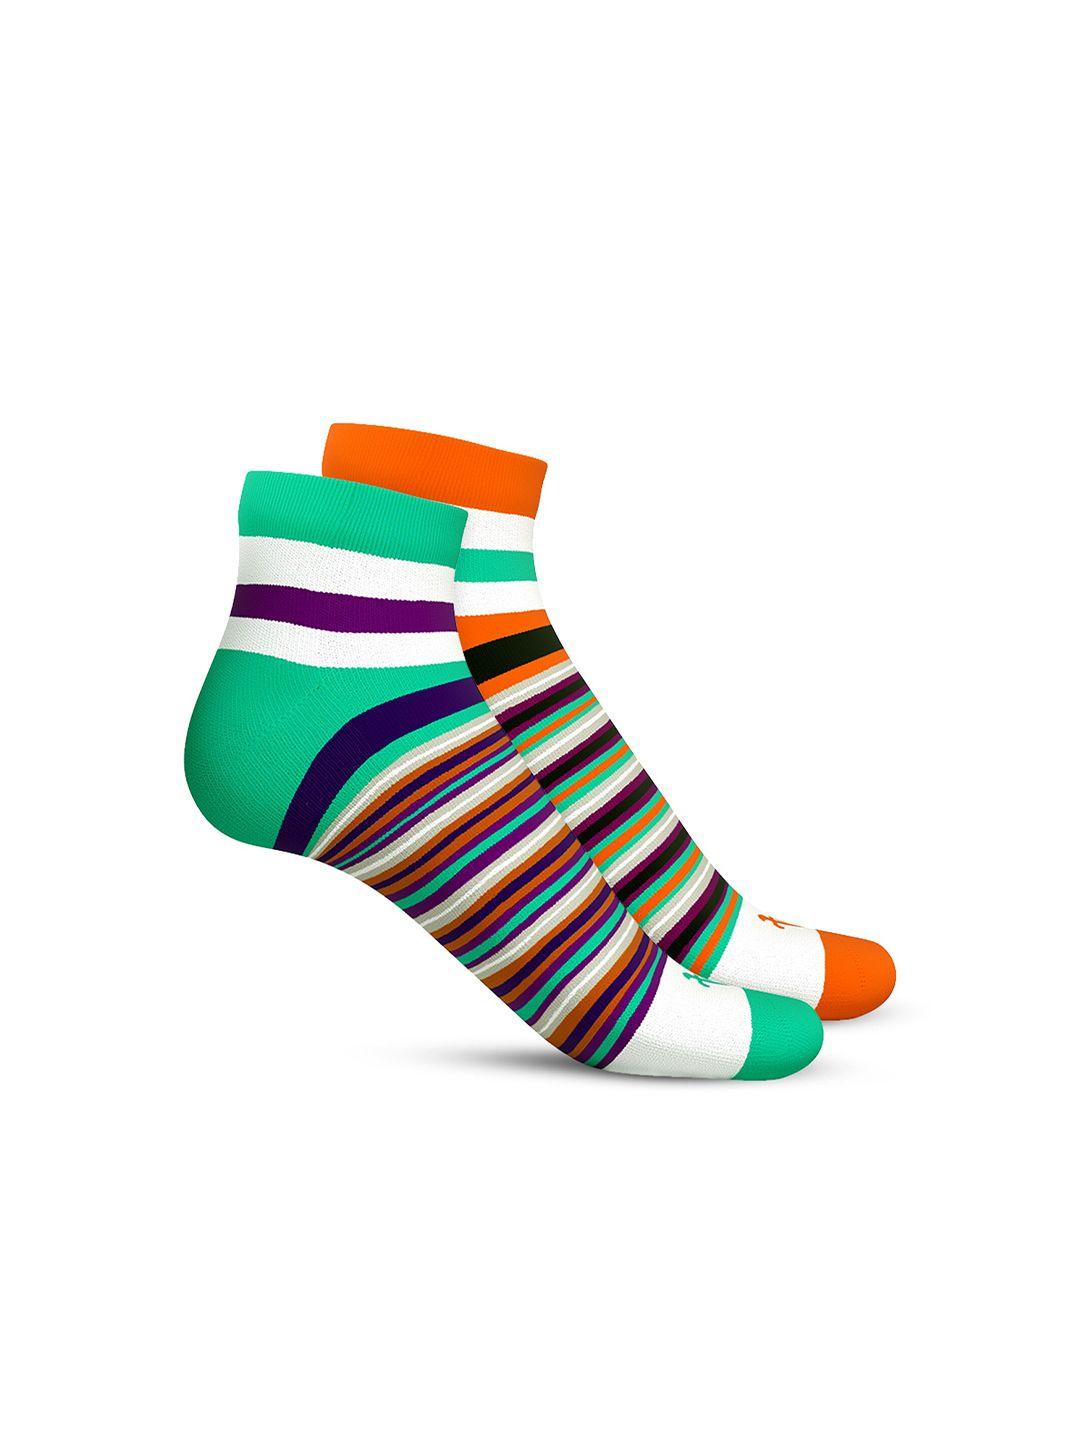 talkingsox-unisex-pack-of-2-striped-ankle-length-socks